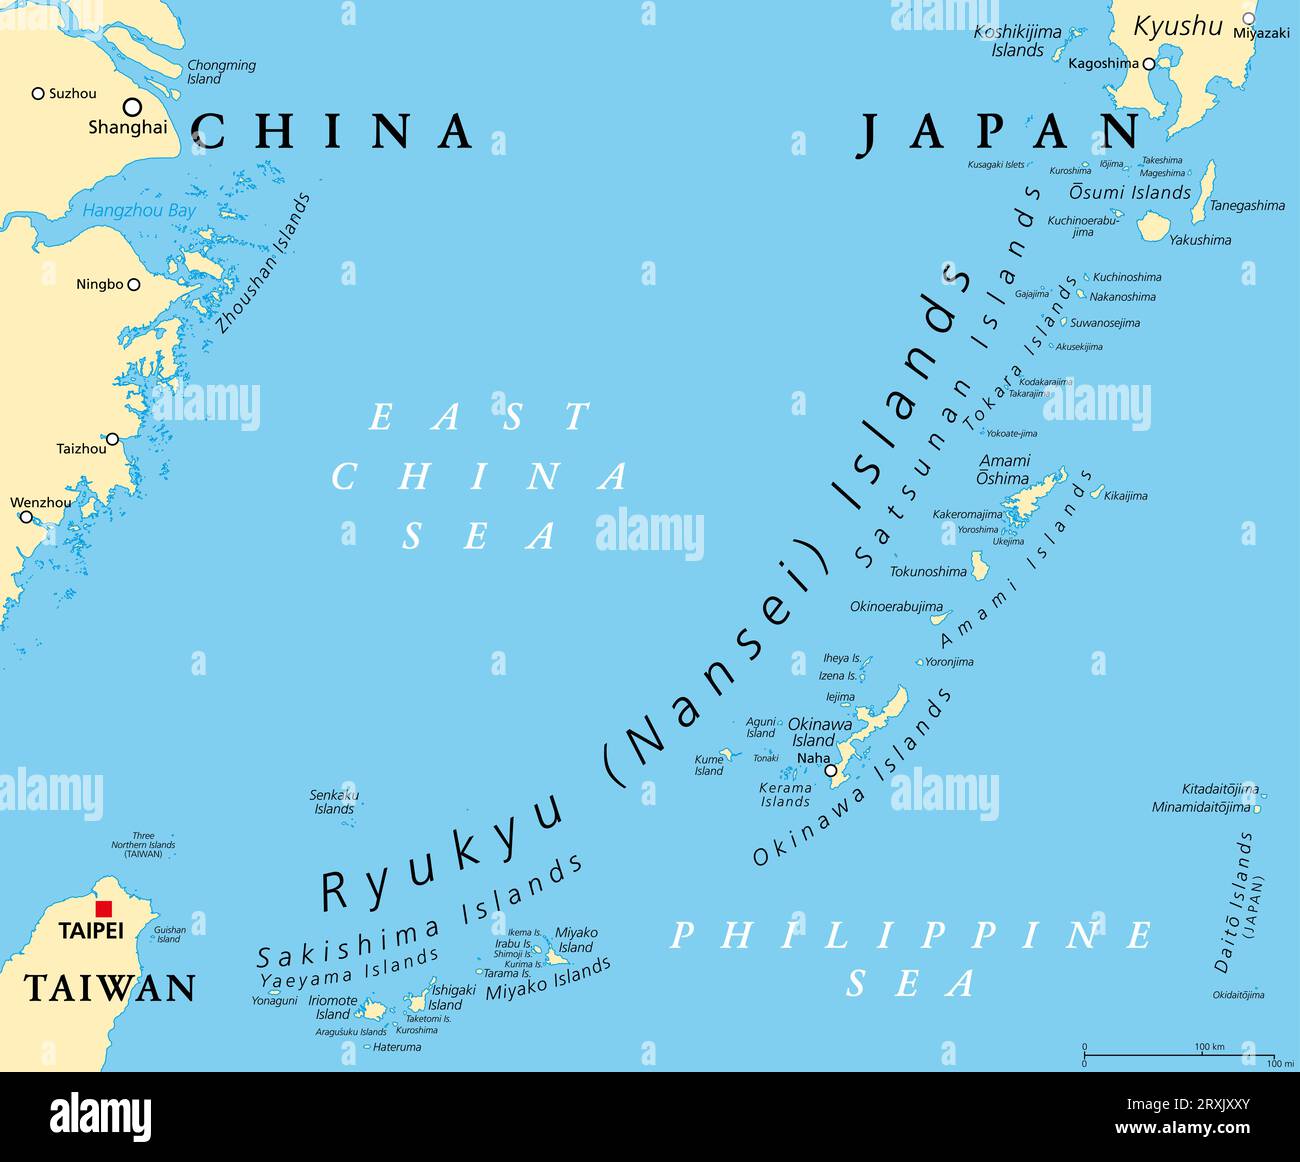 Ryukyu-Inseln, auch bekannt als Nansei-Inseln, politische Landkarte. Der Ryukyu Arc, eine japanische, meist vulkanische Inselkette, die sich von Kyushu bis Taiwan erstreckt. Stockfoto